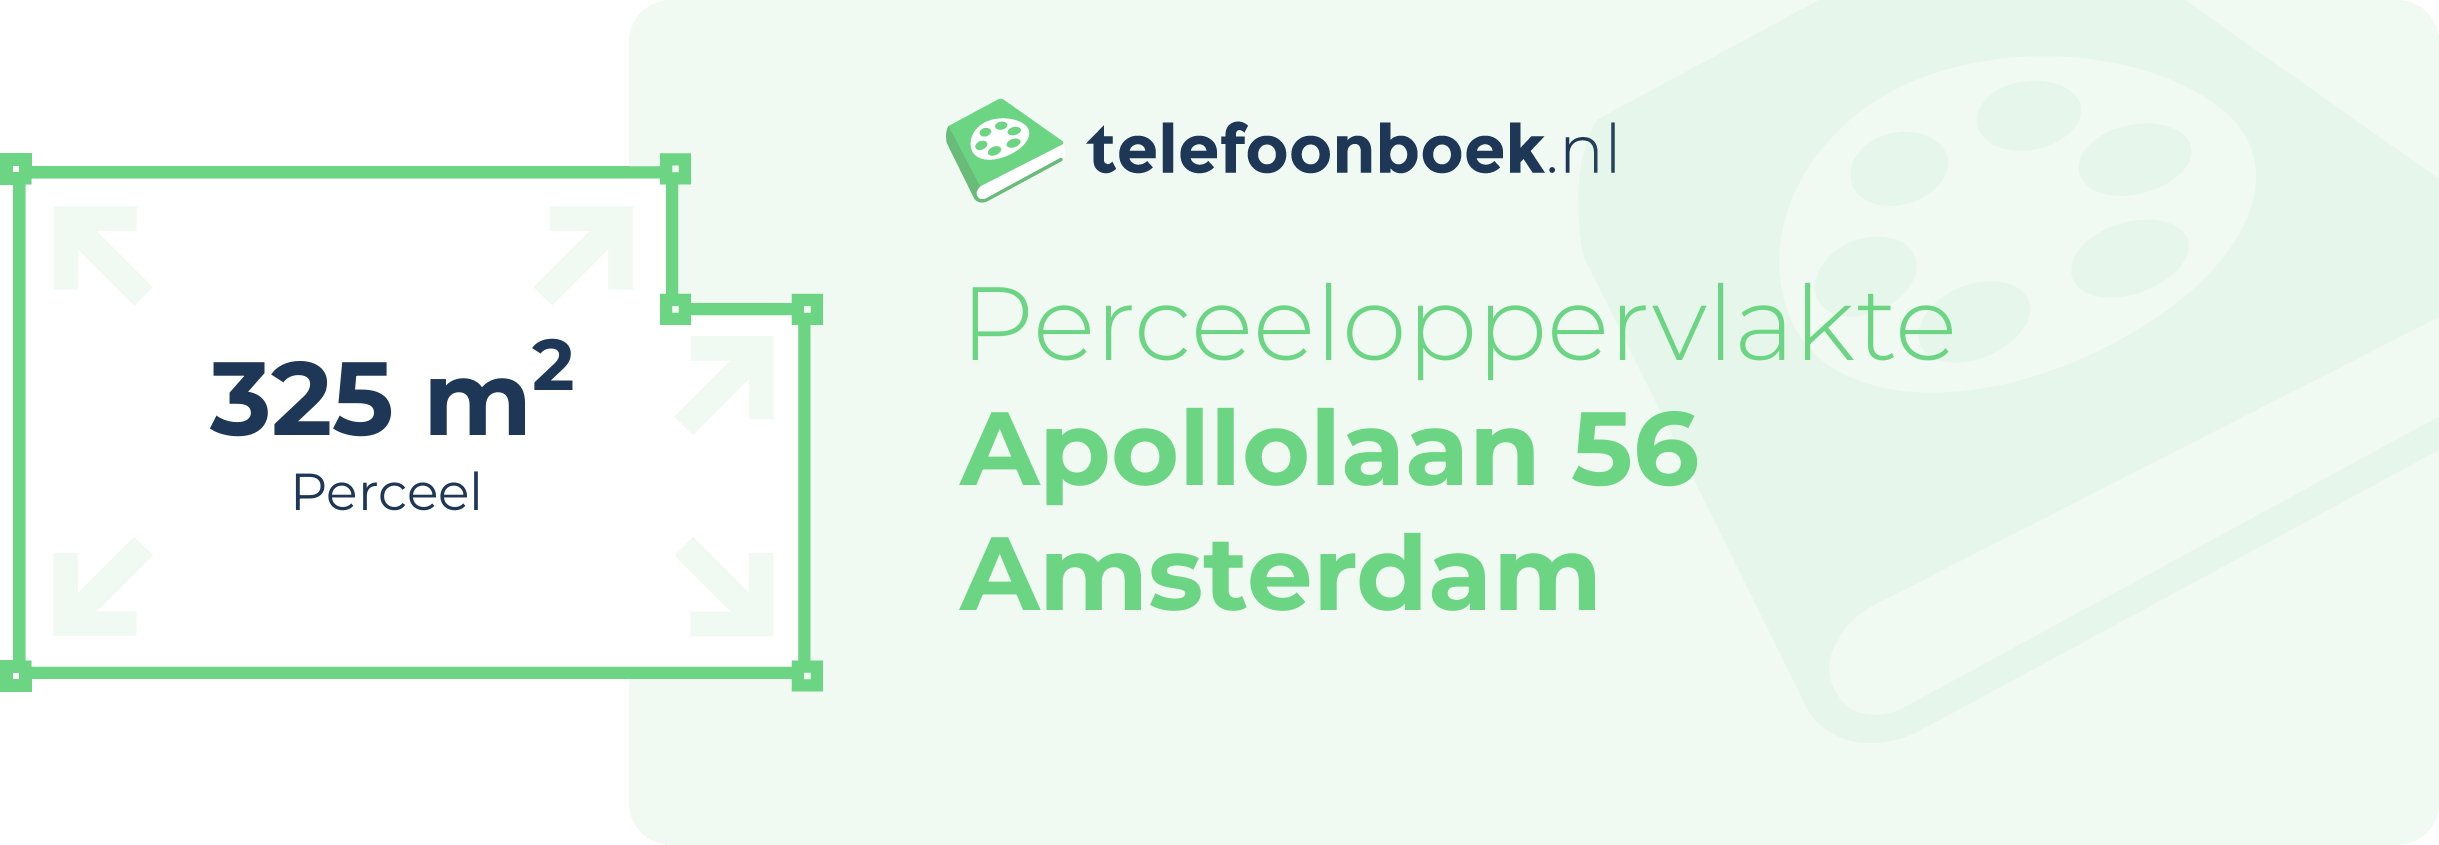 Perceeloppervlakte Apollolaan 56 Amsterdam